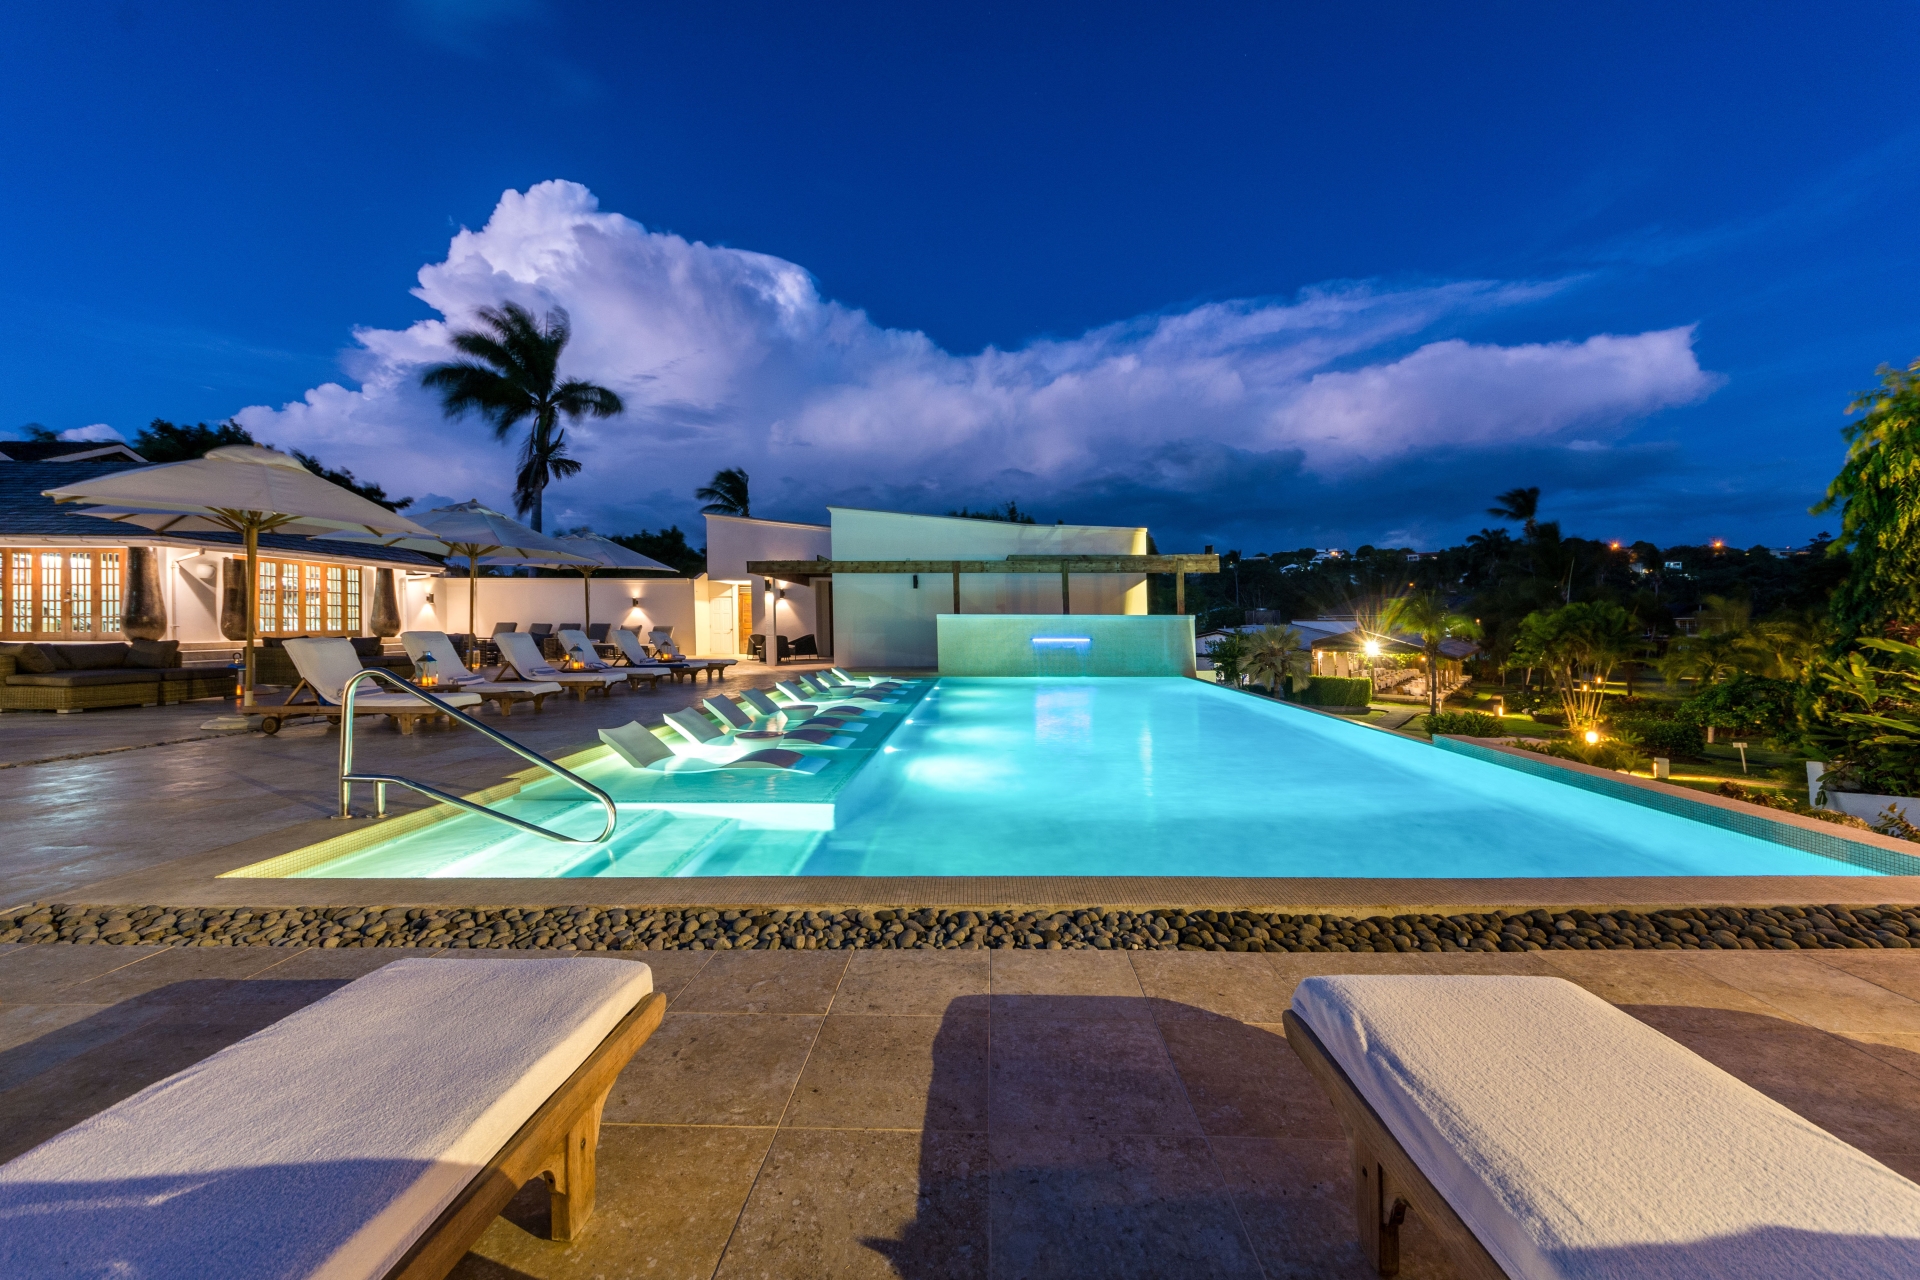 Main pool - Calabash, Grenada